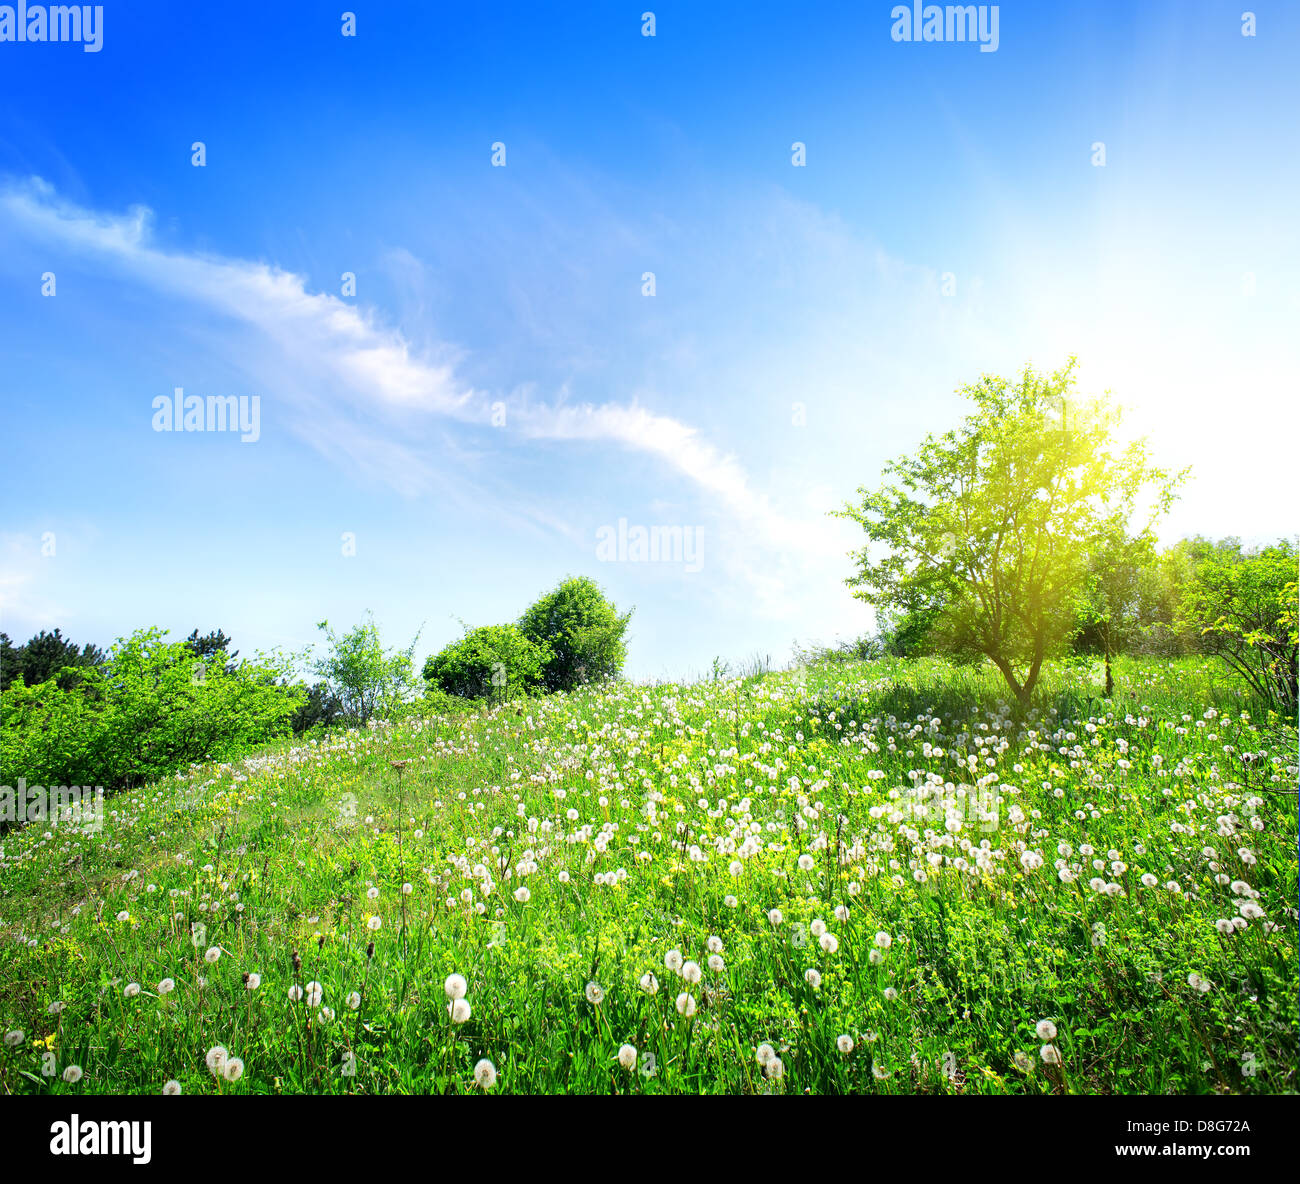 Dandelions on a green meadow in sunlight Stock Photo